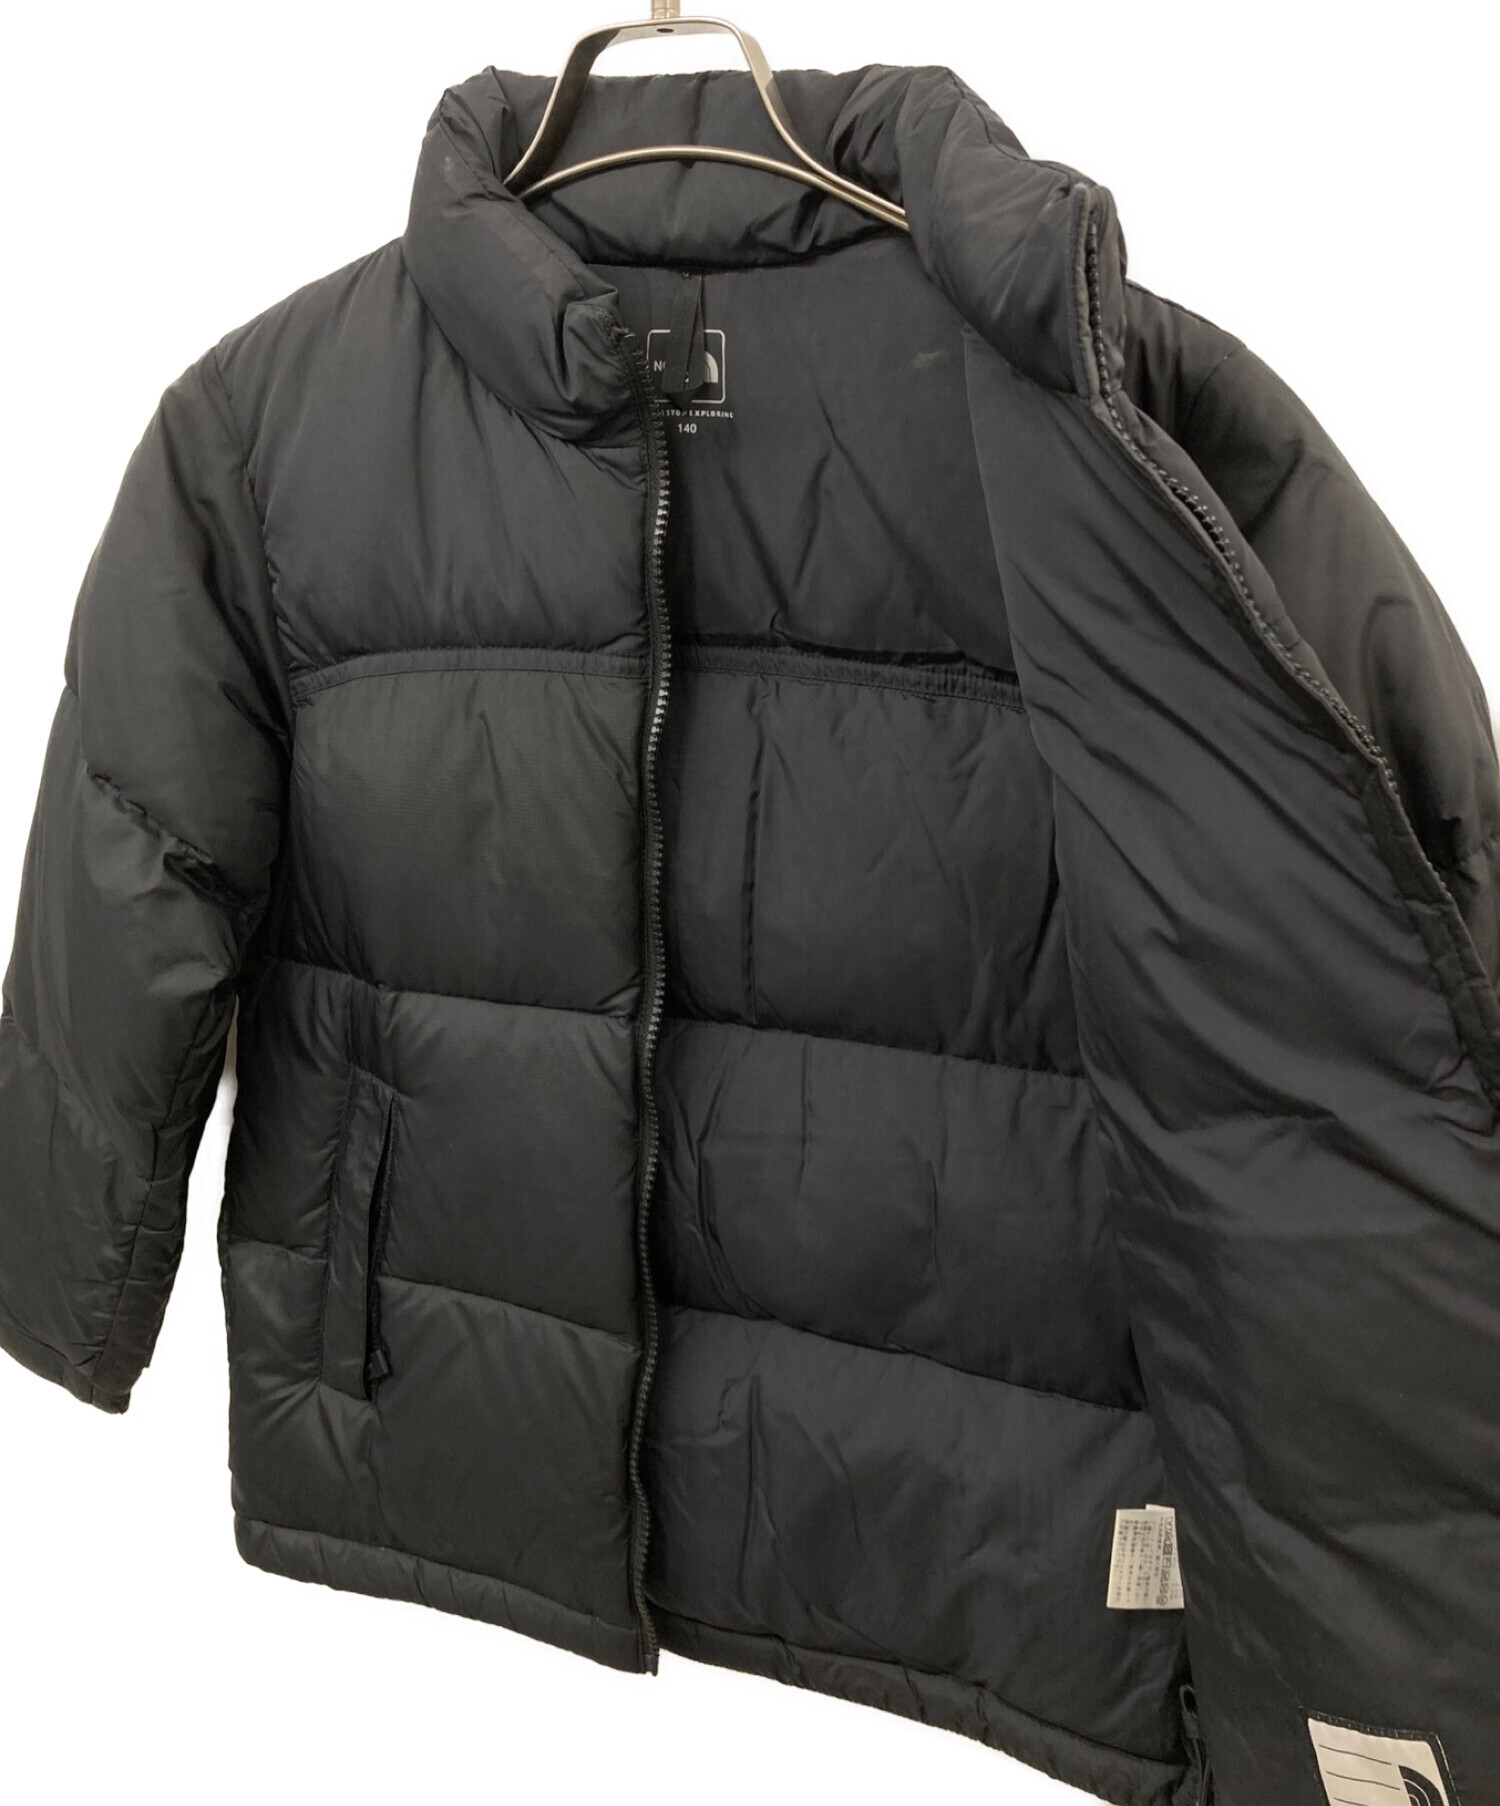 THE NORTH FACE (ザ ノース フェイス) キッズヌプシジャケット ブラック サイズ:140キッズサイズ